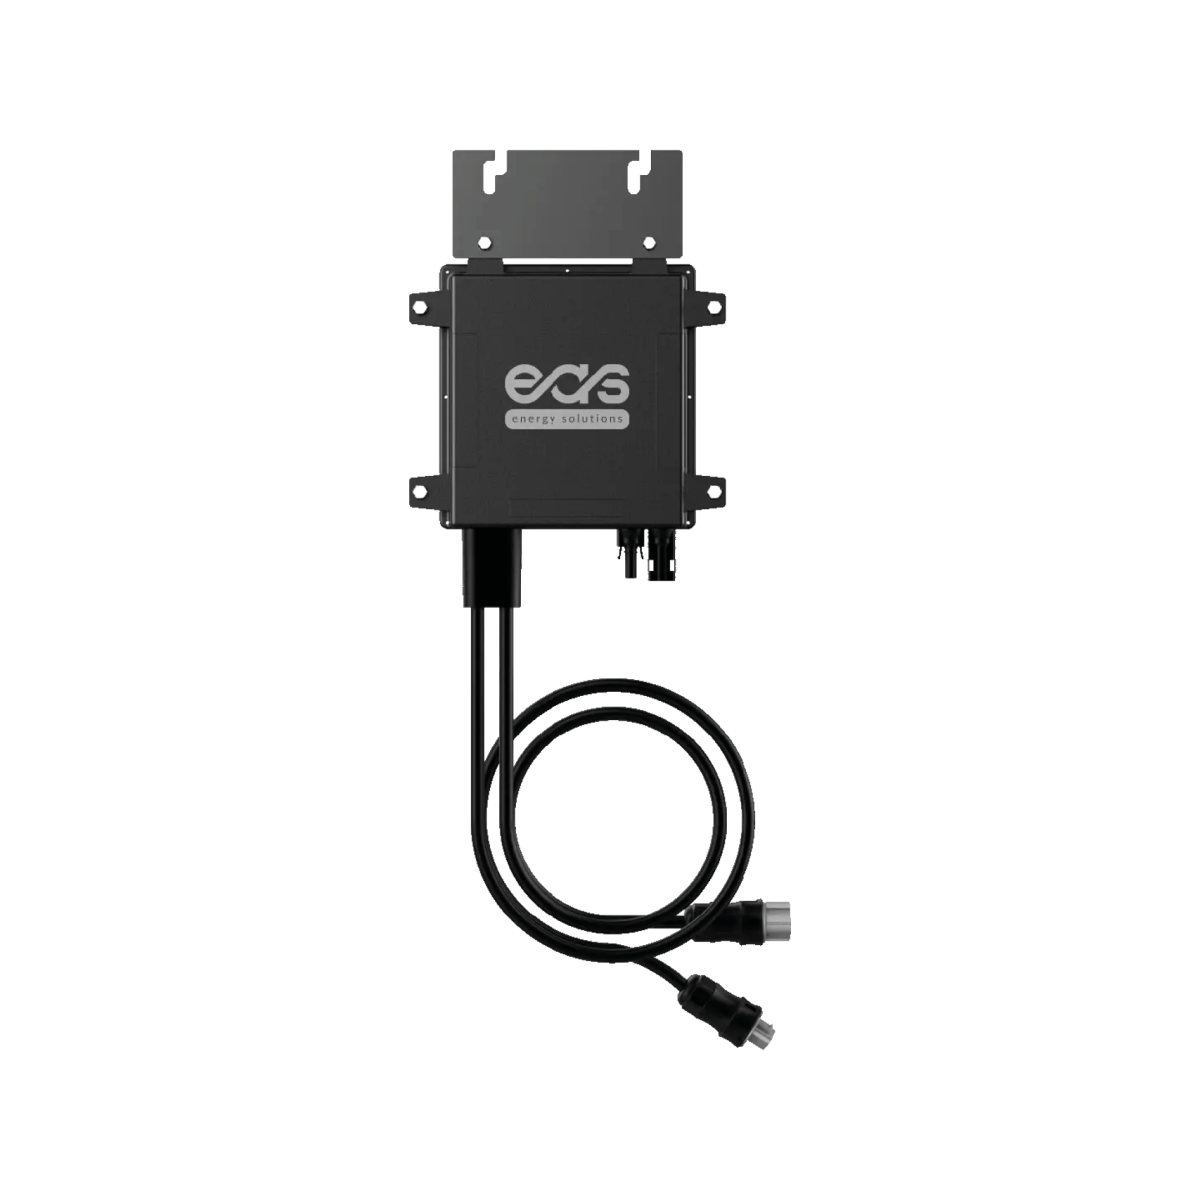 Mikrowechselrichter Modulwechselrichter NEP/EAS 600 W smart WiFi App ,  229,00 €